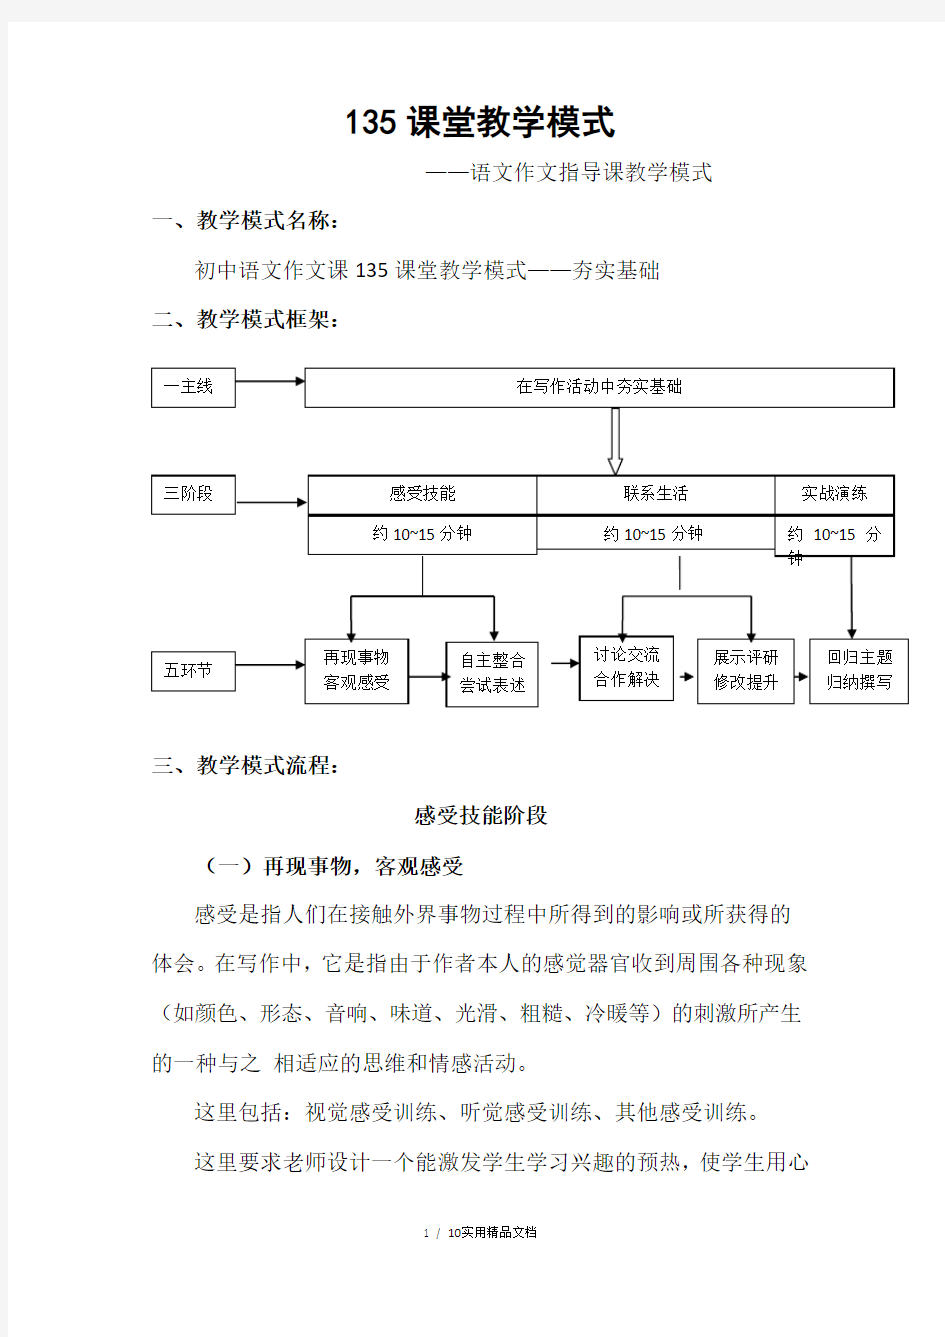 初中语文作文指导课教学模式及教学设计